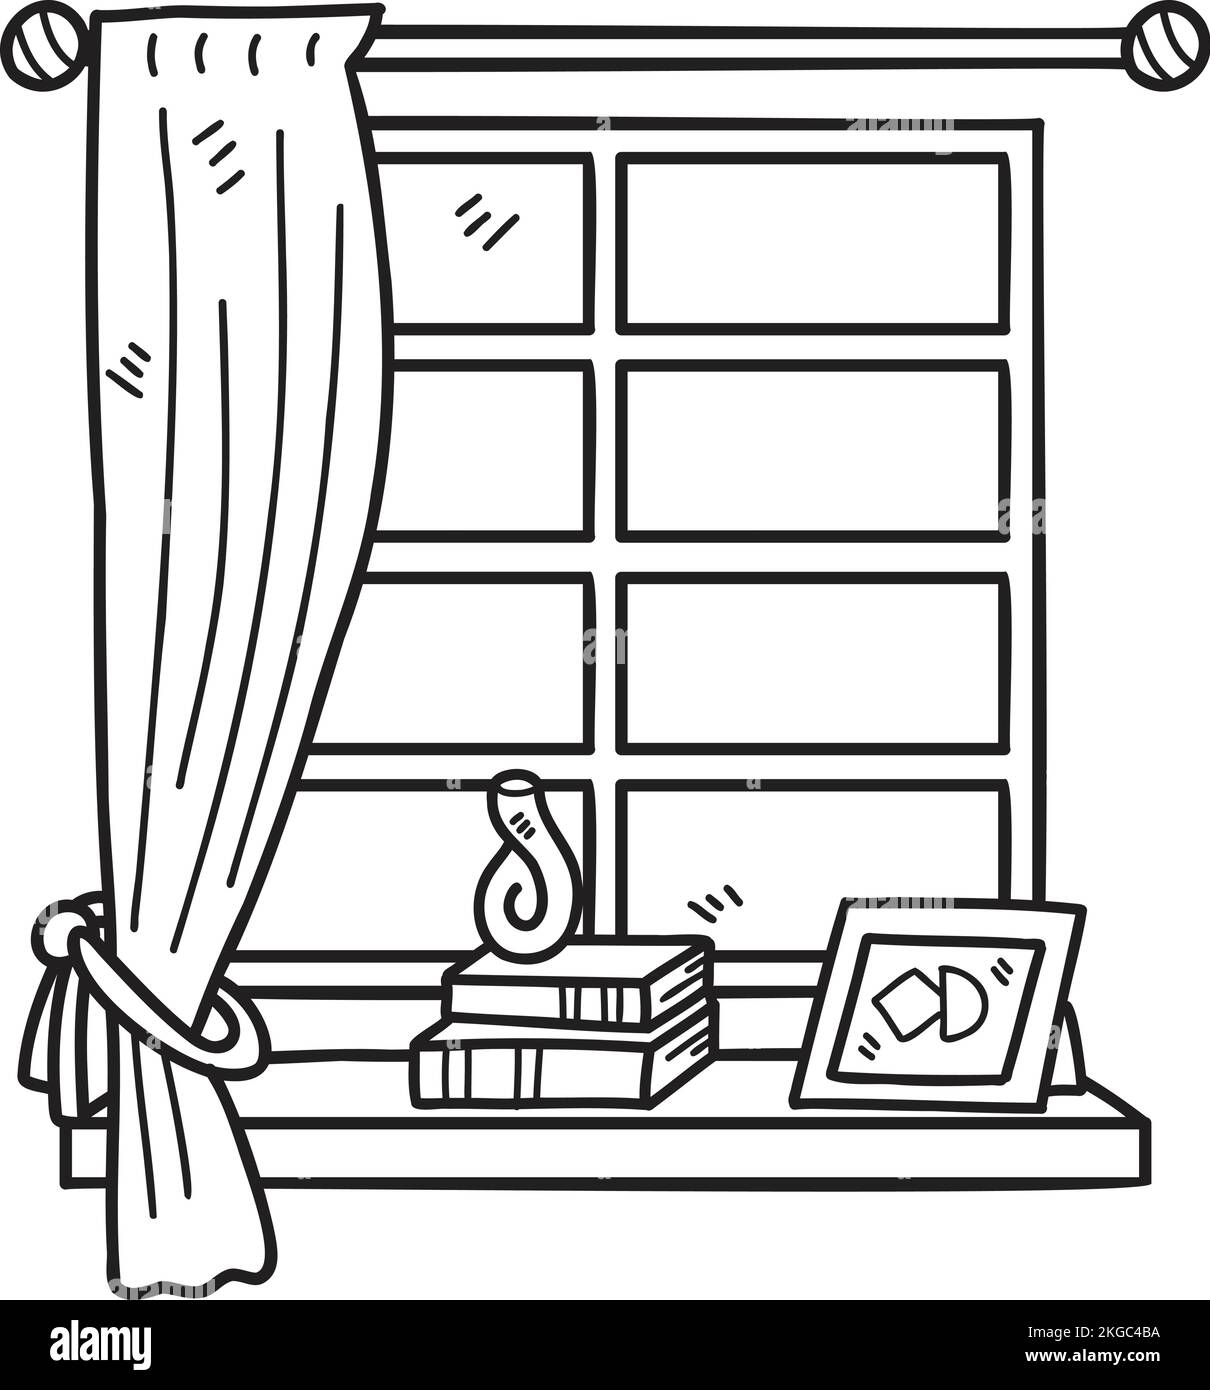 Fenêtre dessinée à la main avec rideaux et illustration de cadres isolés sur l'arrière-plan Illustration de Vecteur